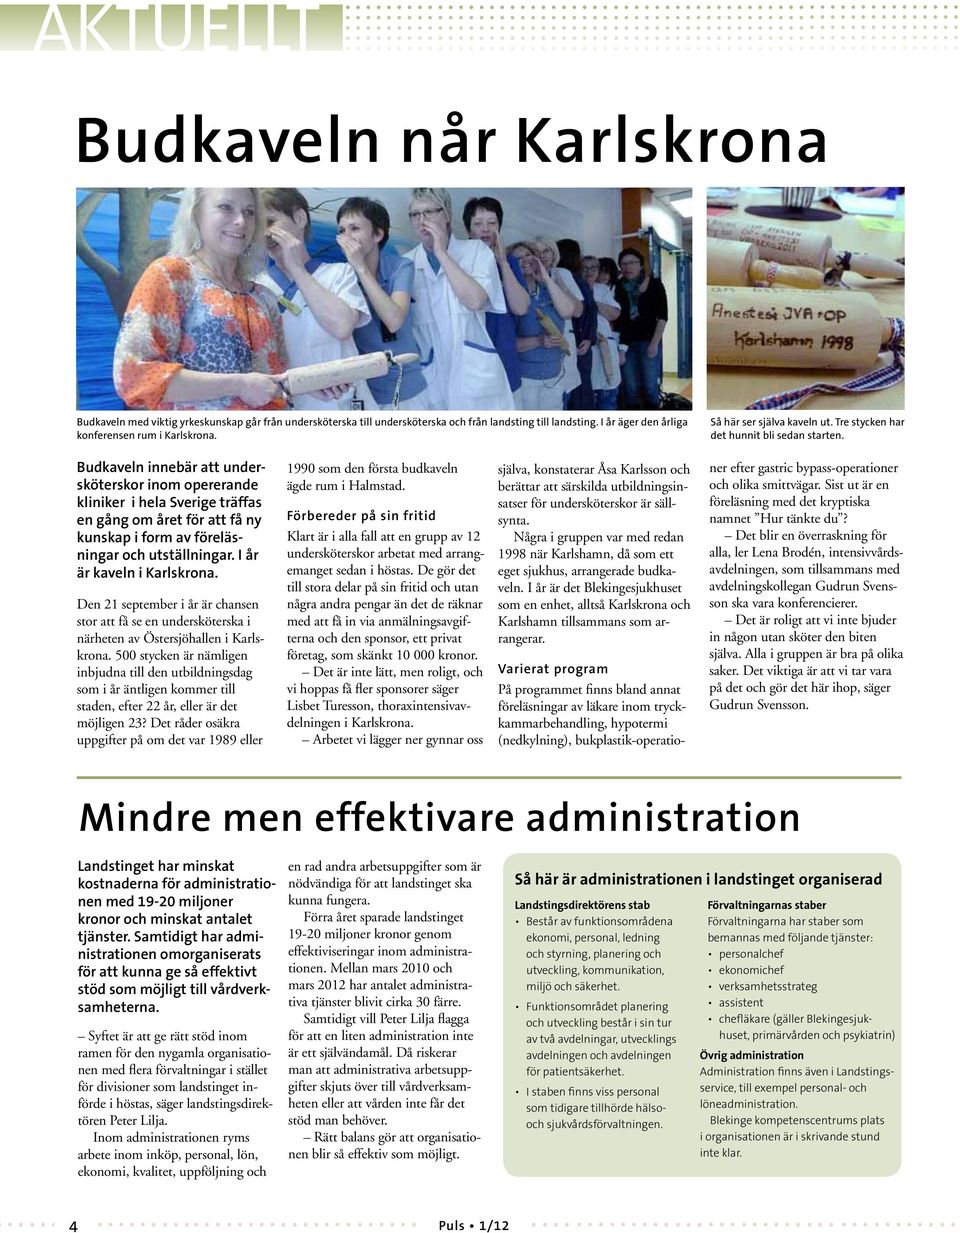 Budkaveln innebär att undersköterskor inom opererande kliniker i hela Sverige träffas en gång om året för att få ny kunskap i form av föreläsningar och utställningar. I år är kaveln i Karlskrona.